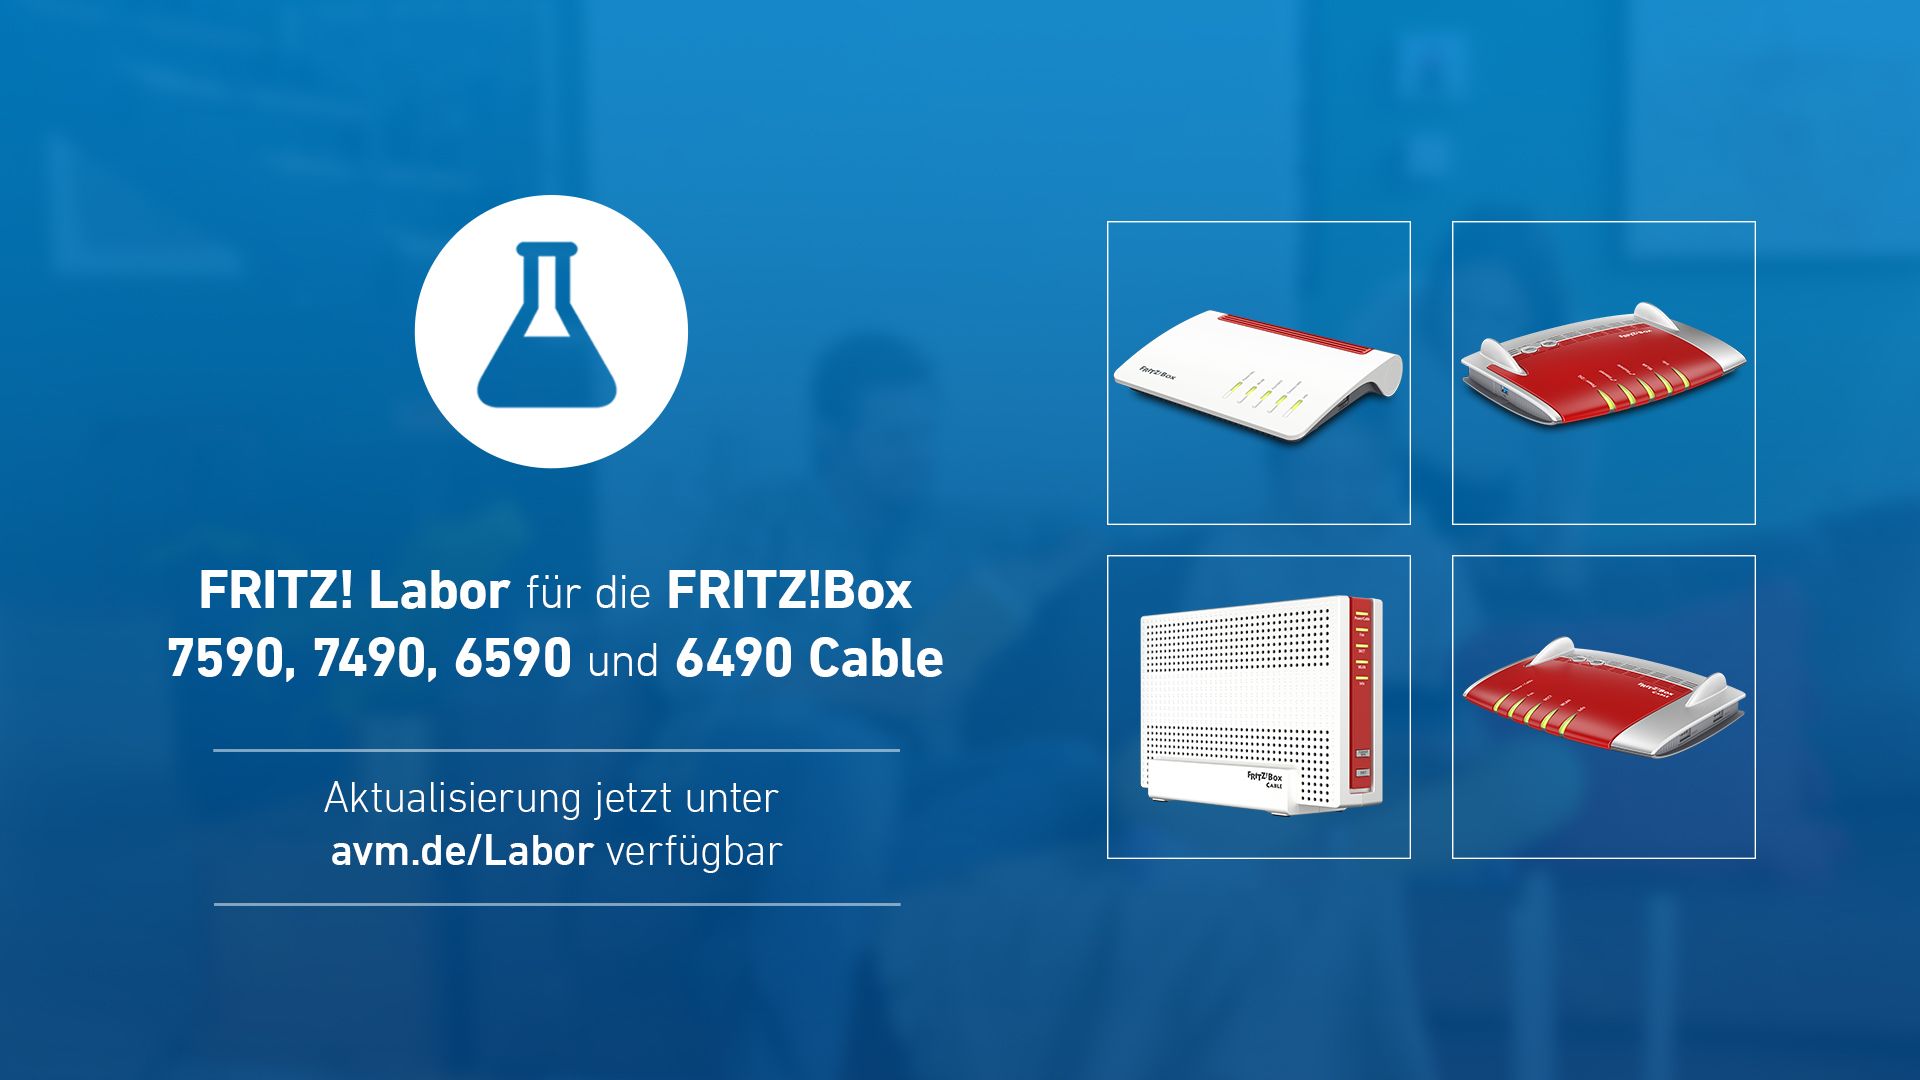 Fritz-Box Labor Update 7.19: Neue Versionen fr Fritz!Box Cable 6490 und 6590